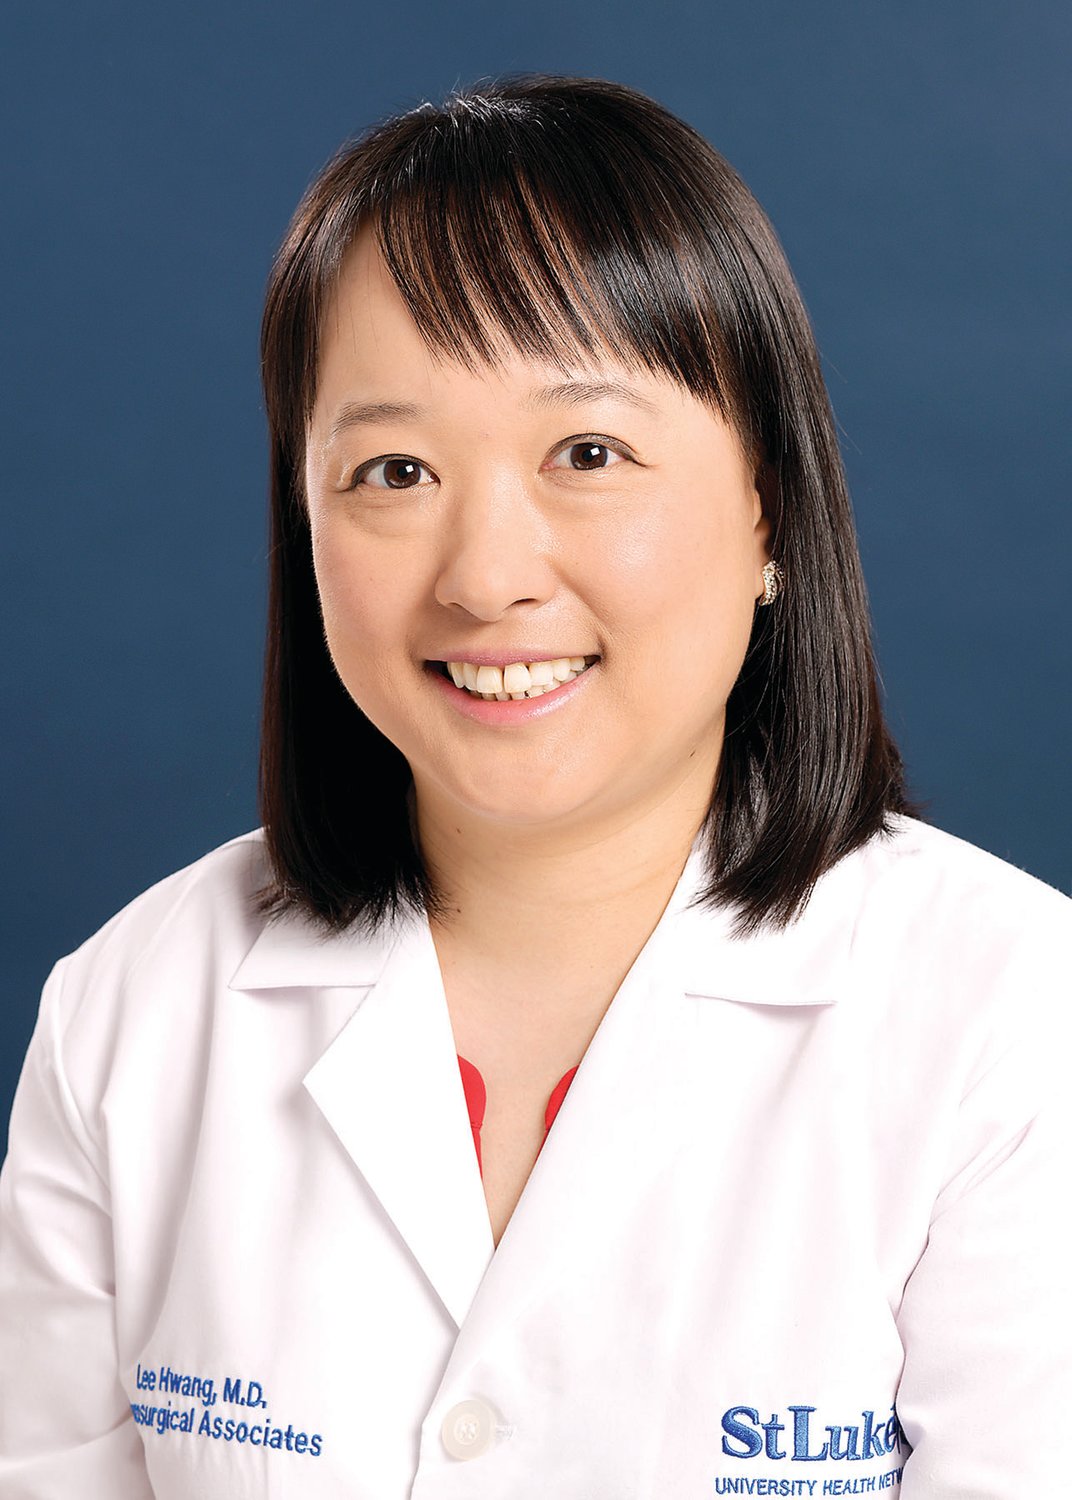 Dr. Lee Hwang